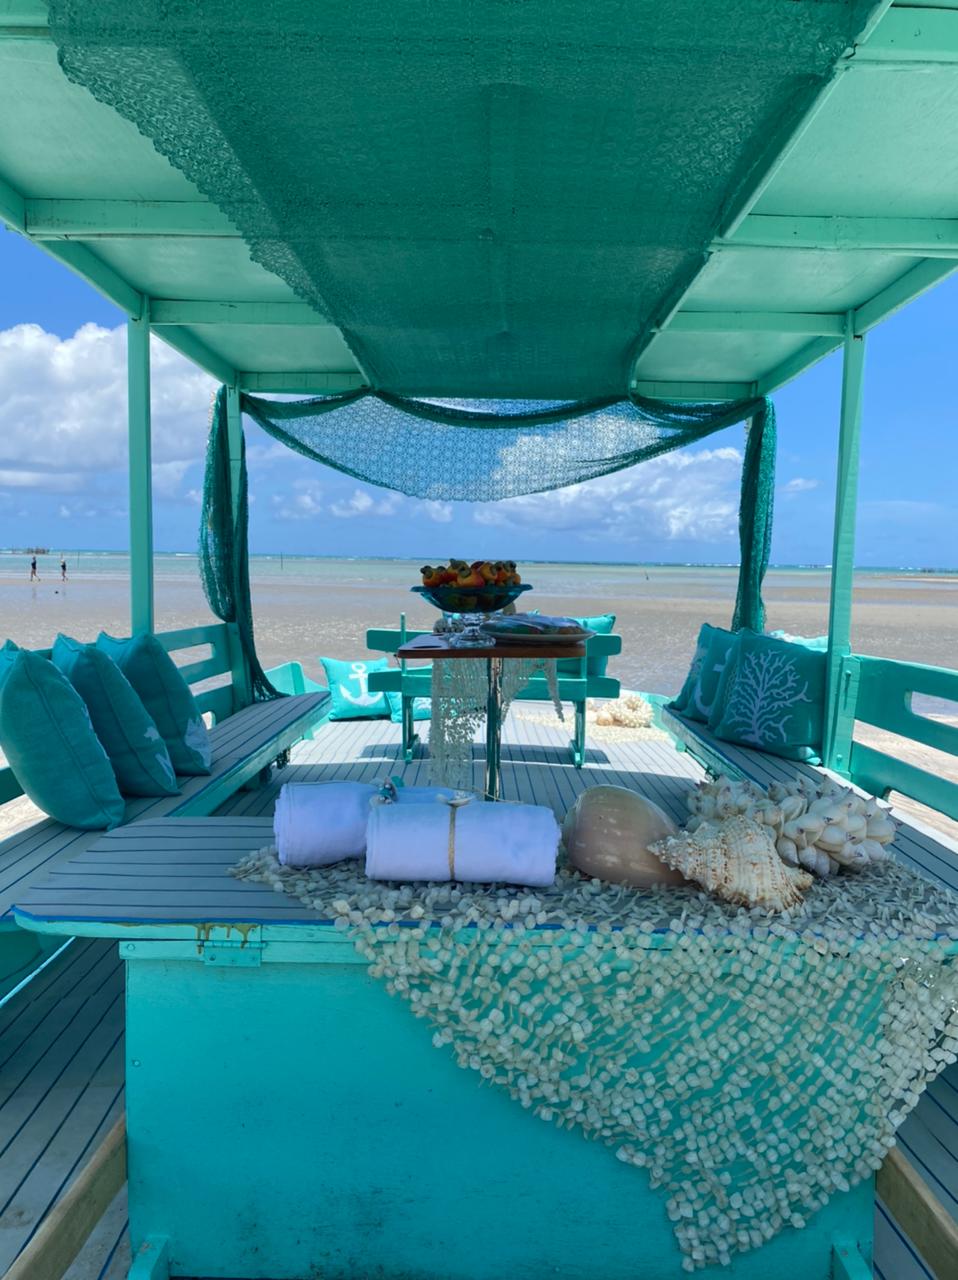 A imagem mostra uma mesa posta à beira-mar, com a cor azul predominando